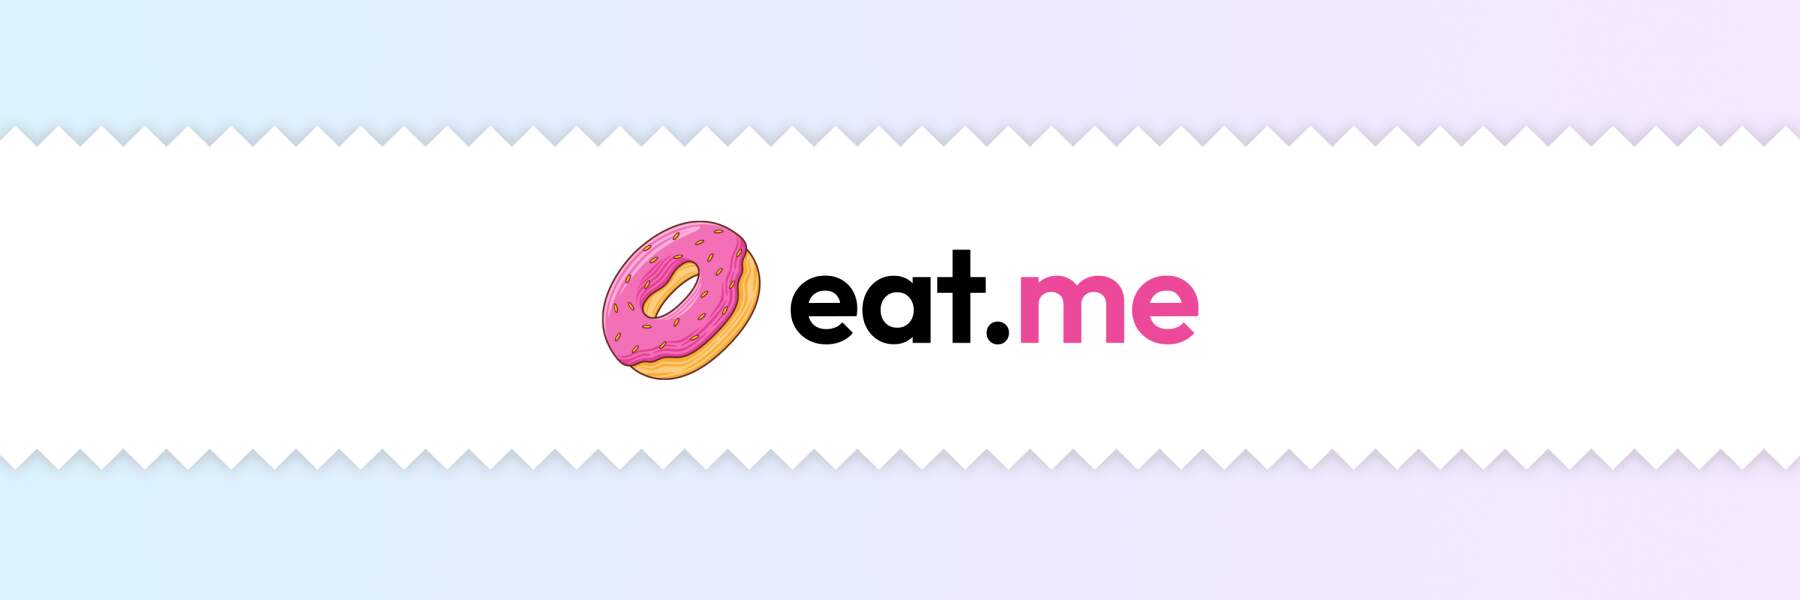 The eat.me app branding